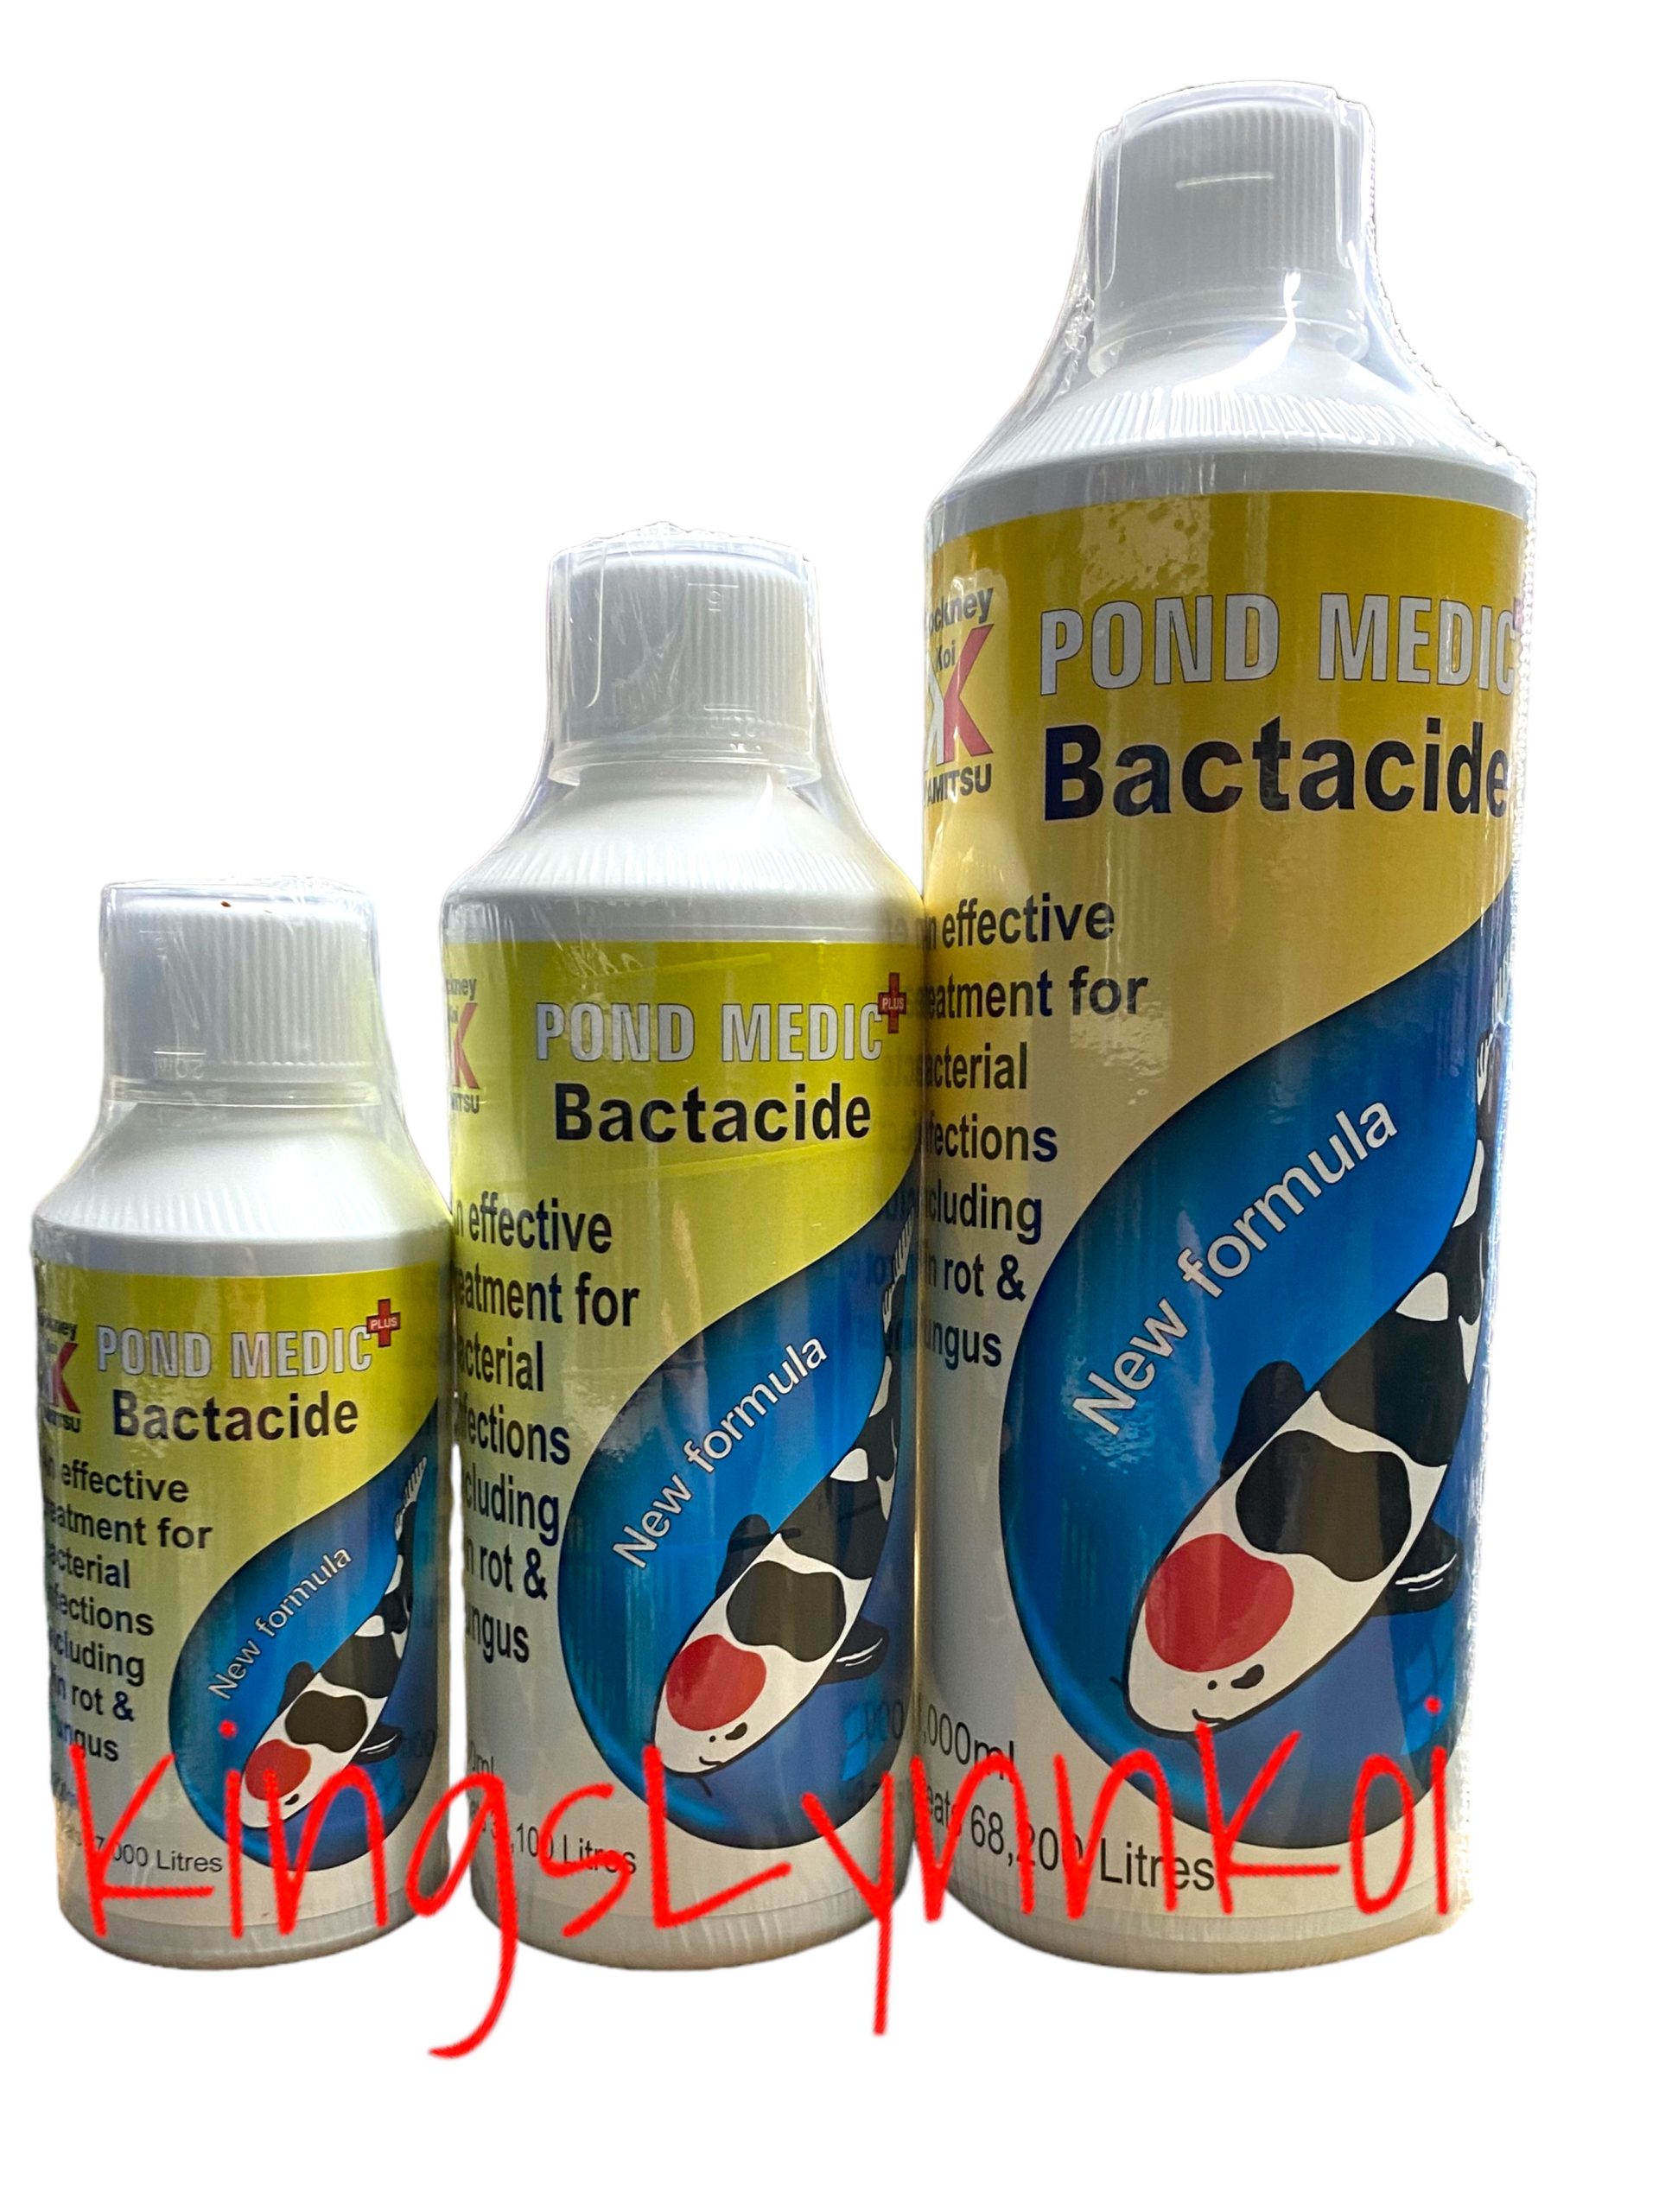 Pond Medic Bactacide